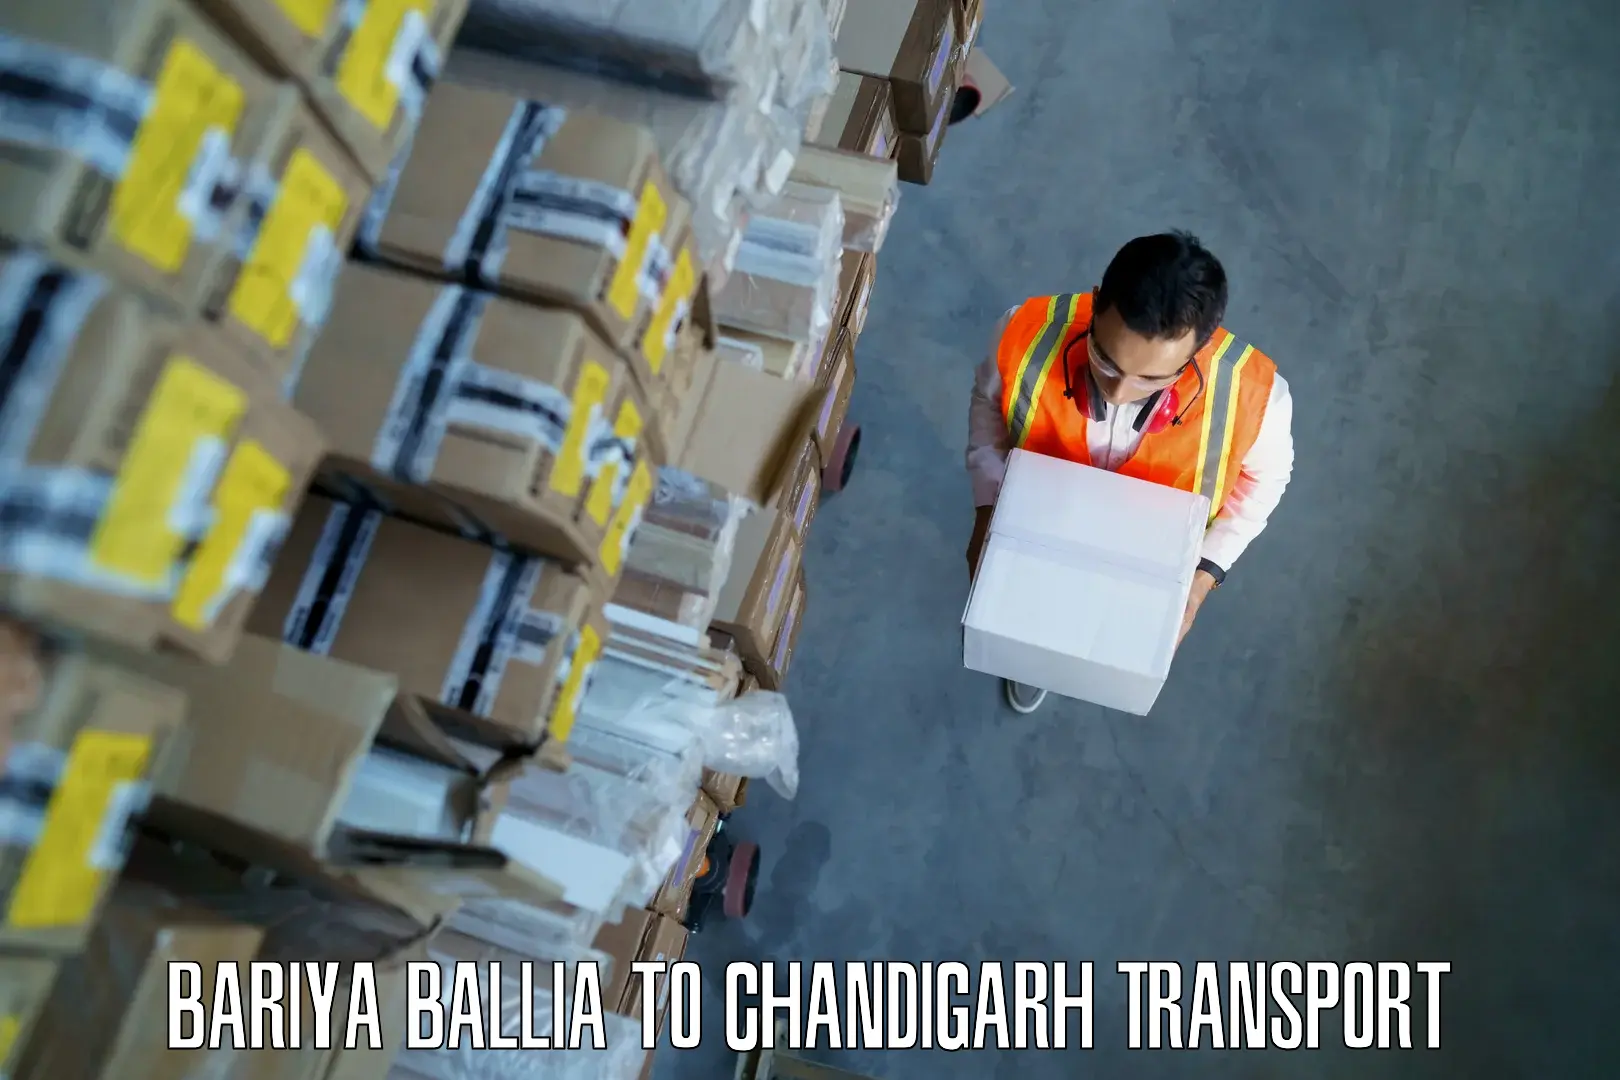 Truck transport companies in India Bariya Ballia to Chandigarh